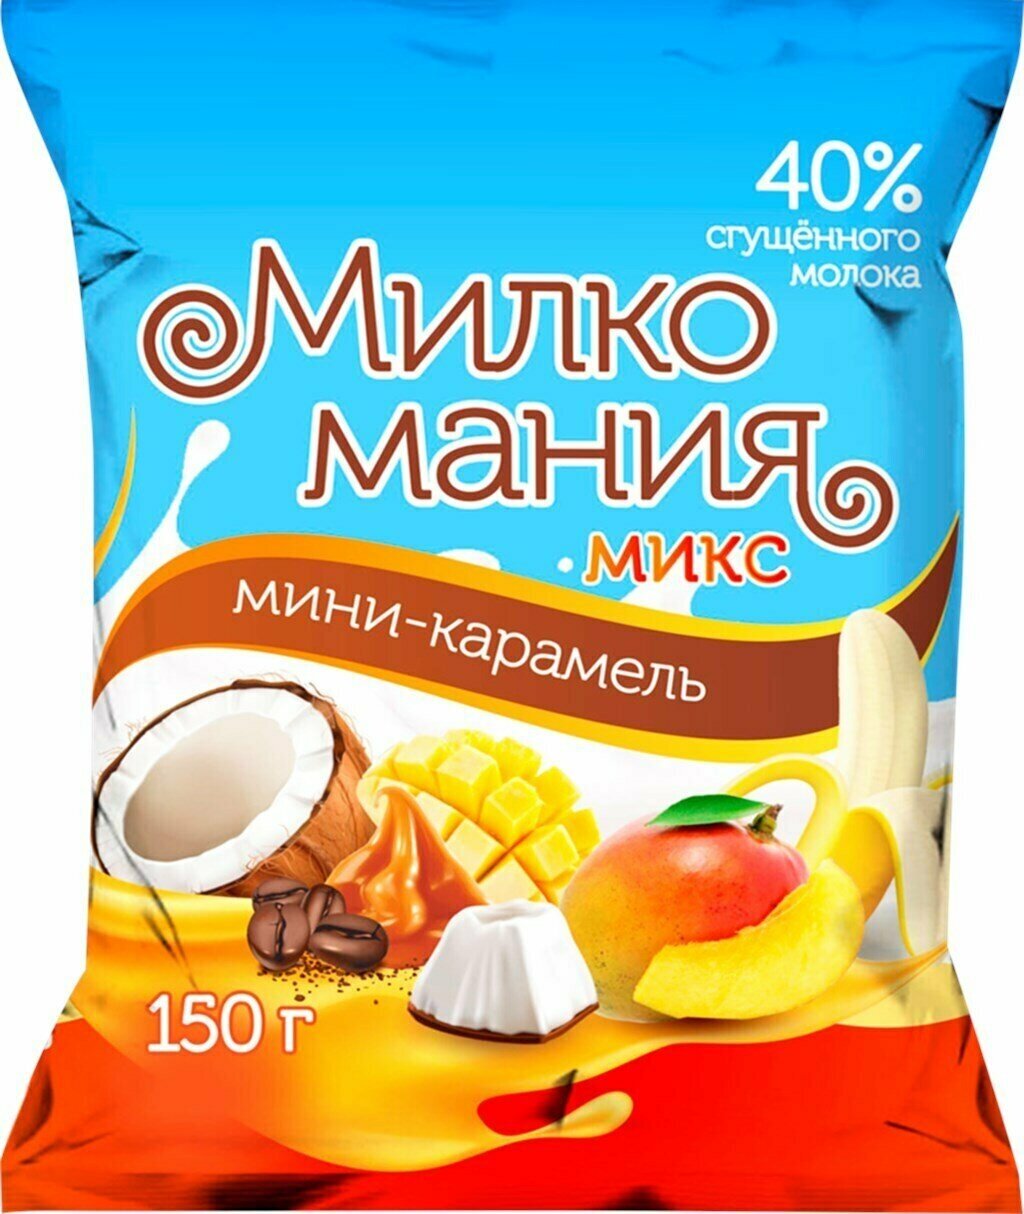 Мини-карамель кондитер профи Милкомания молочная, микс, 150 г - 10 упаковок